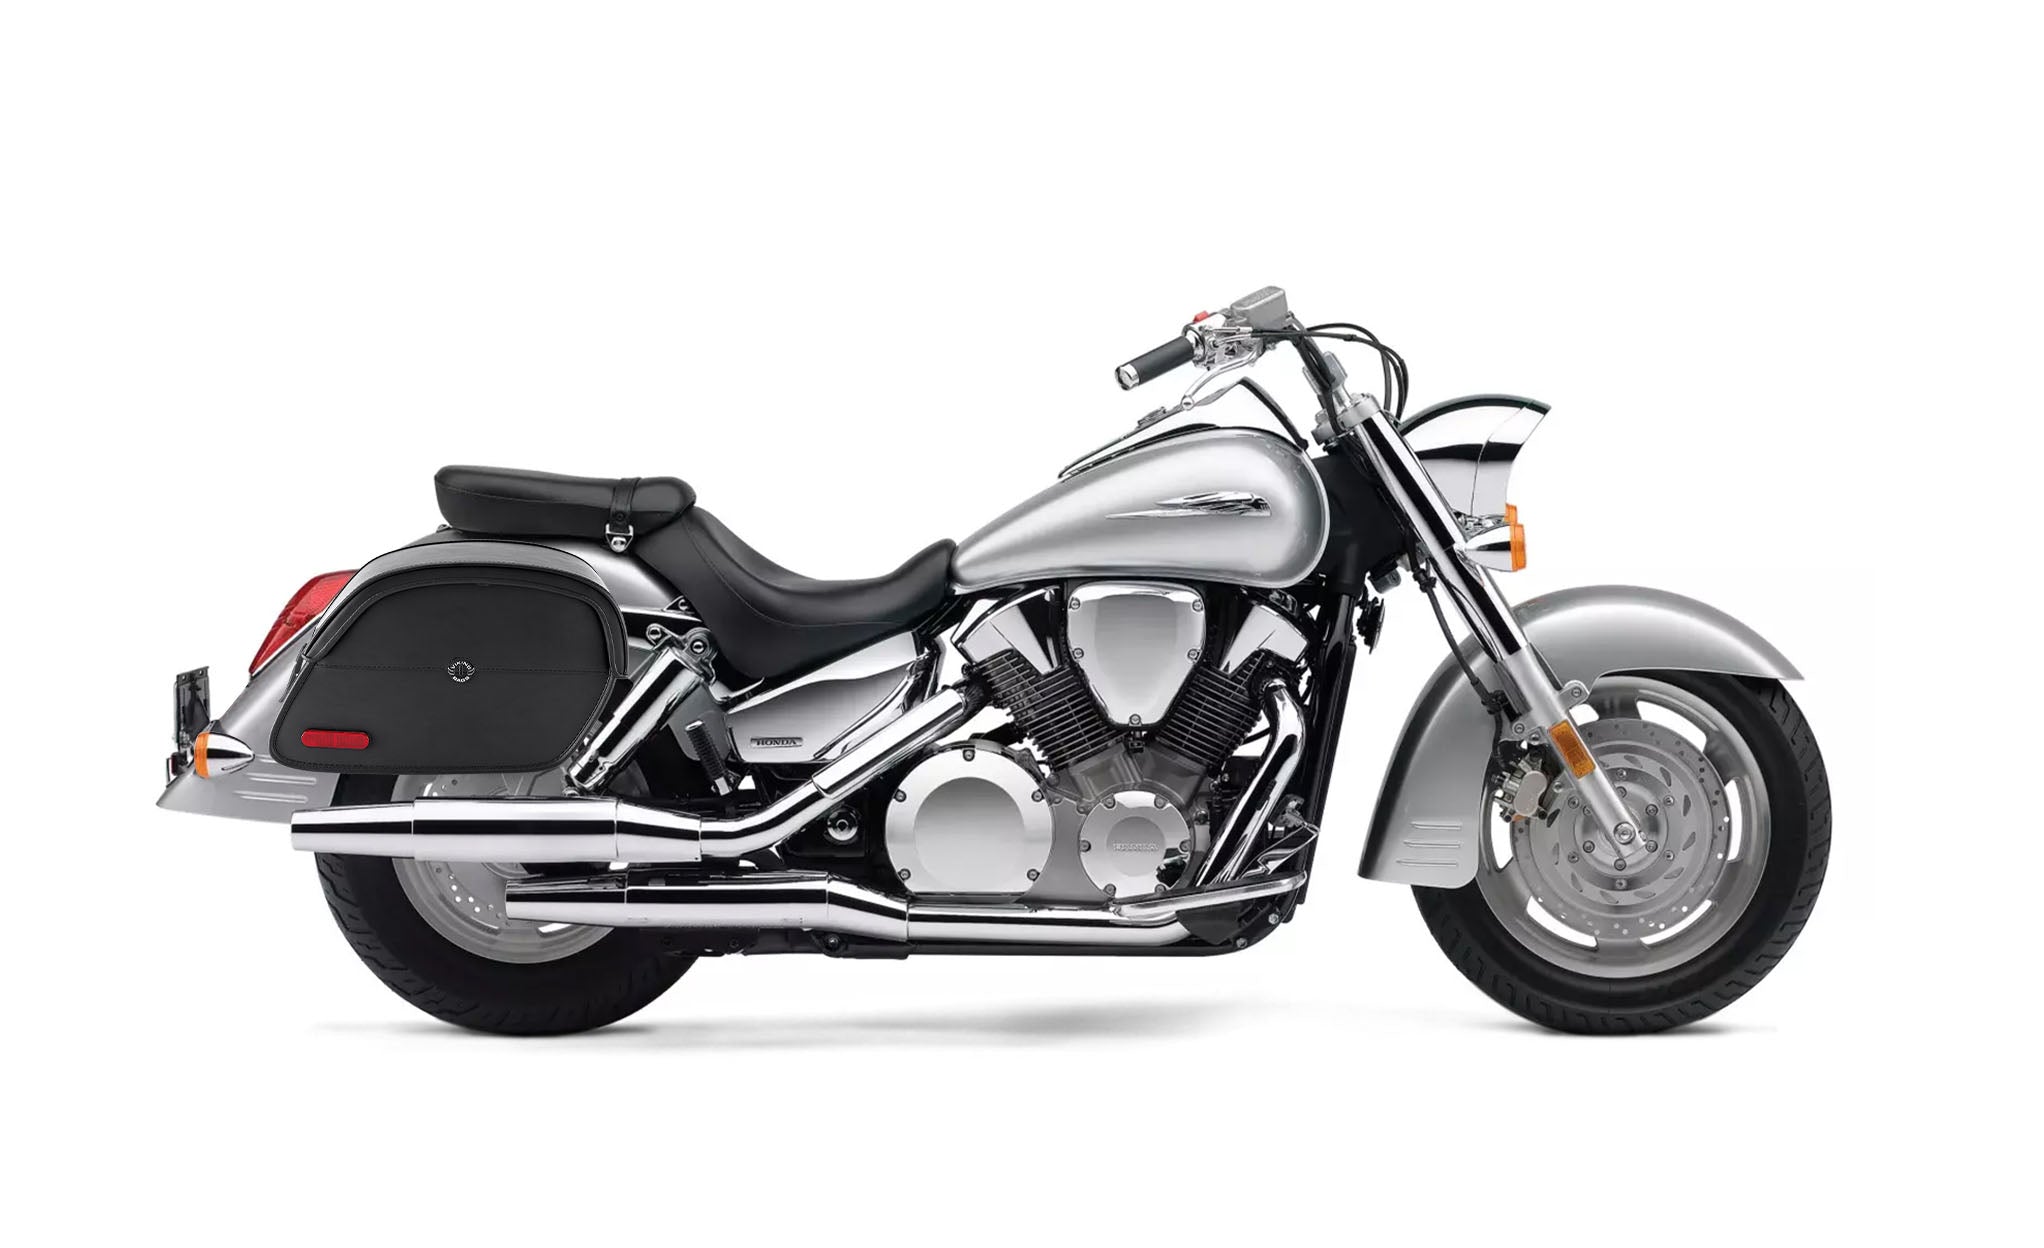 Viking California Large Honda Vtx 1300 S Leather Motorcycle Saddlebags on Bike Photo @expand